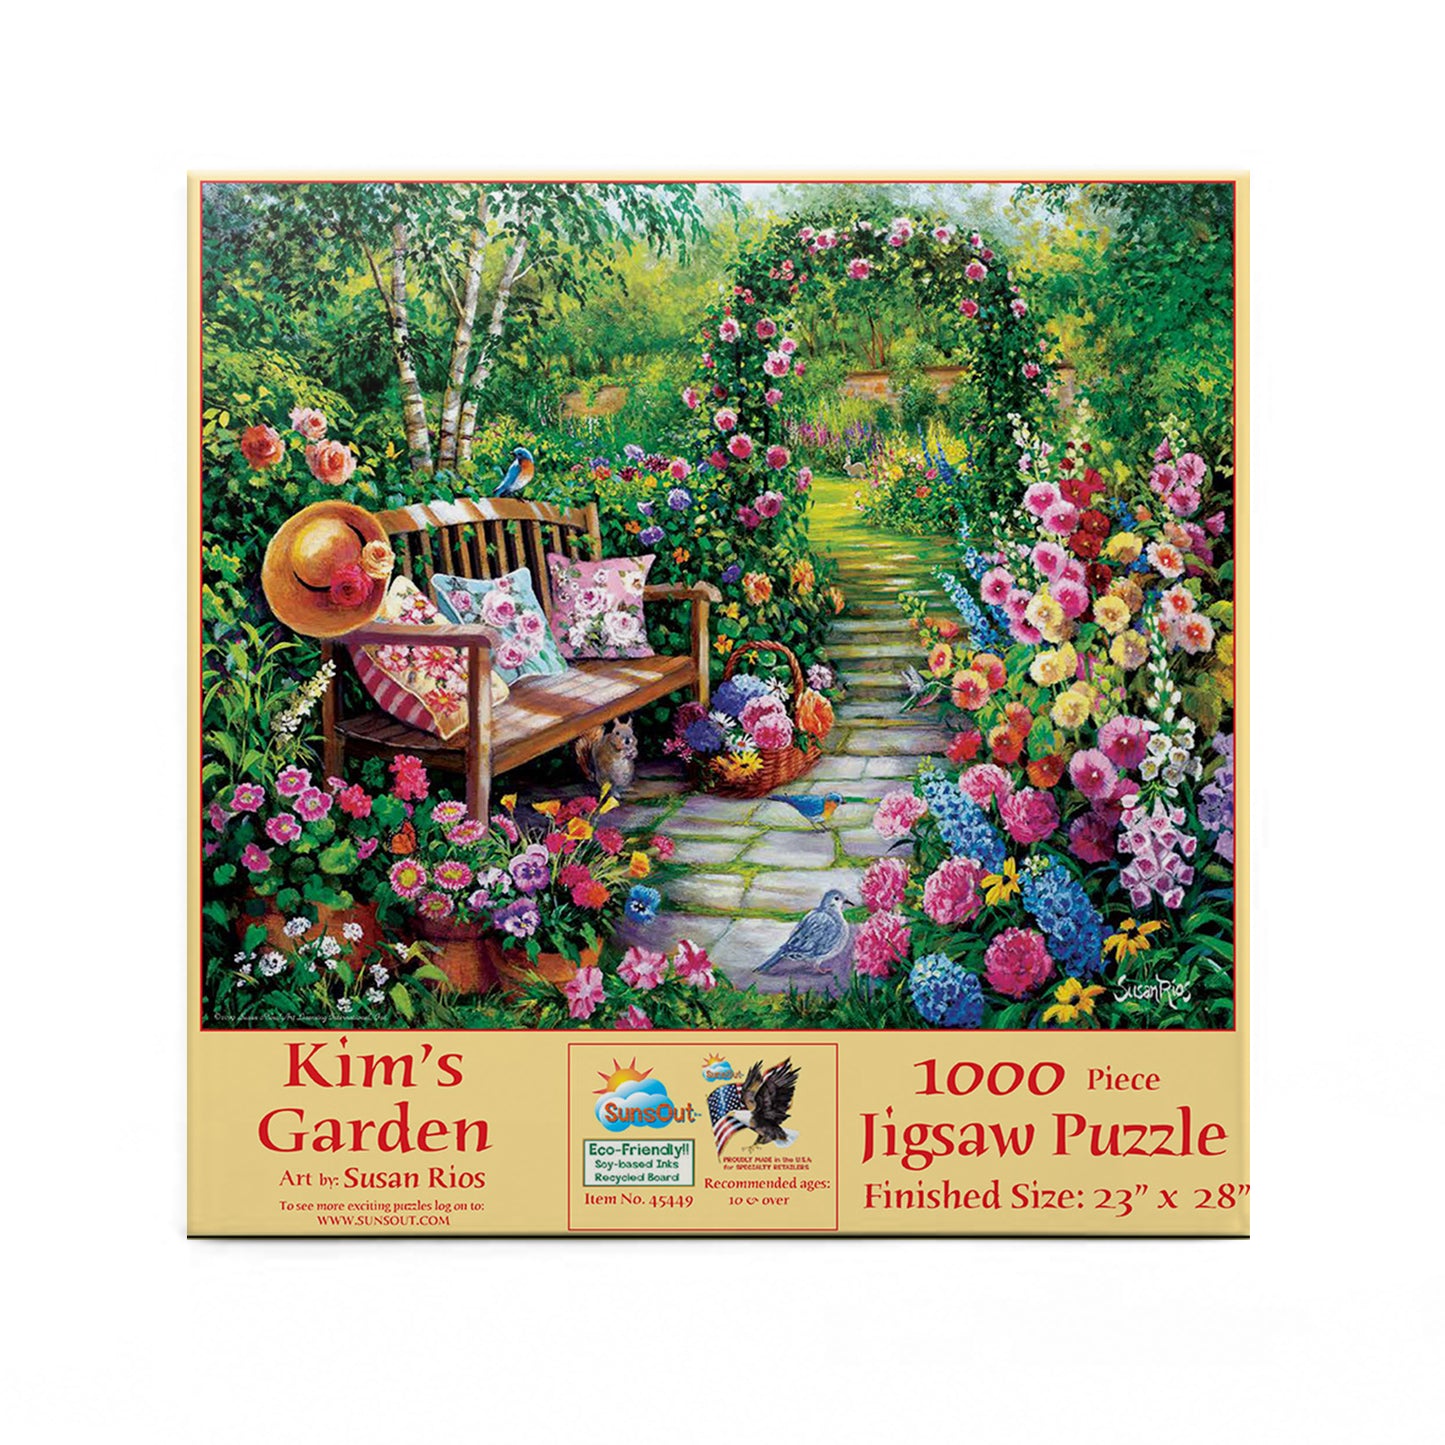 Kim's Garden - 1000 Piece Jigsaw Puzzle